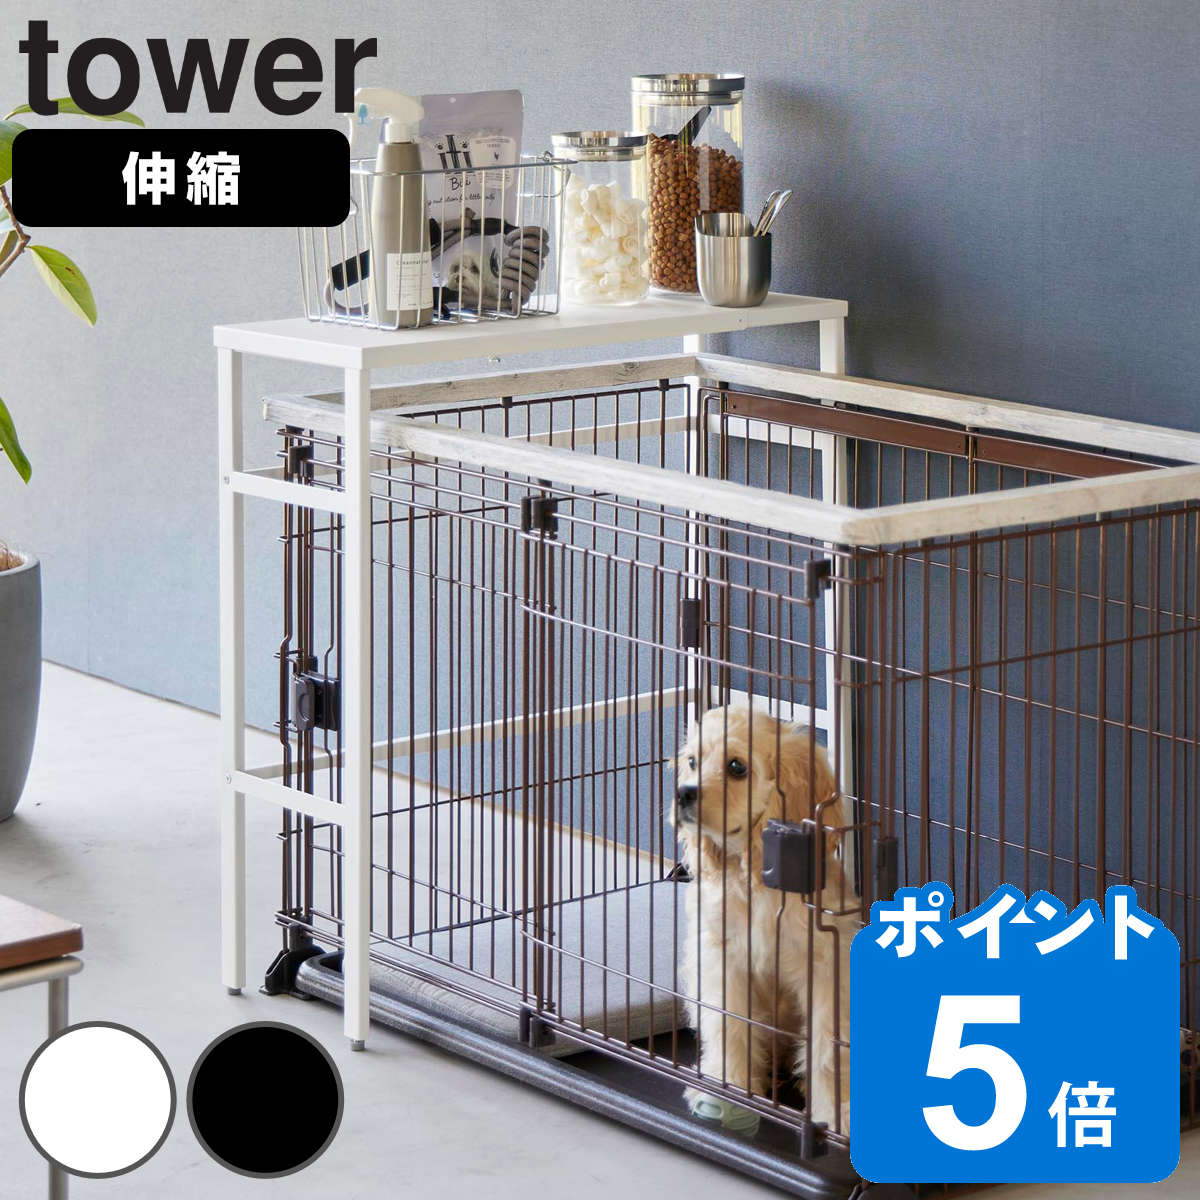 山崎実業 tower 伸縮ペットケージ上ラック タワー